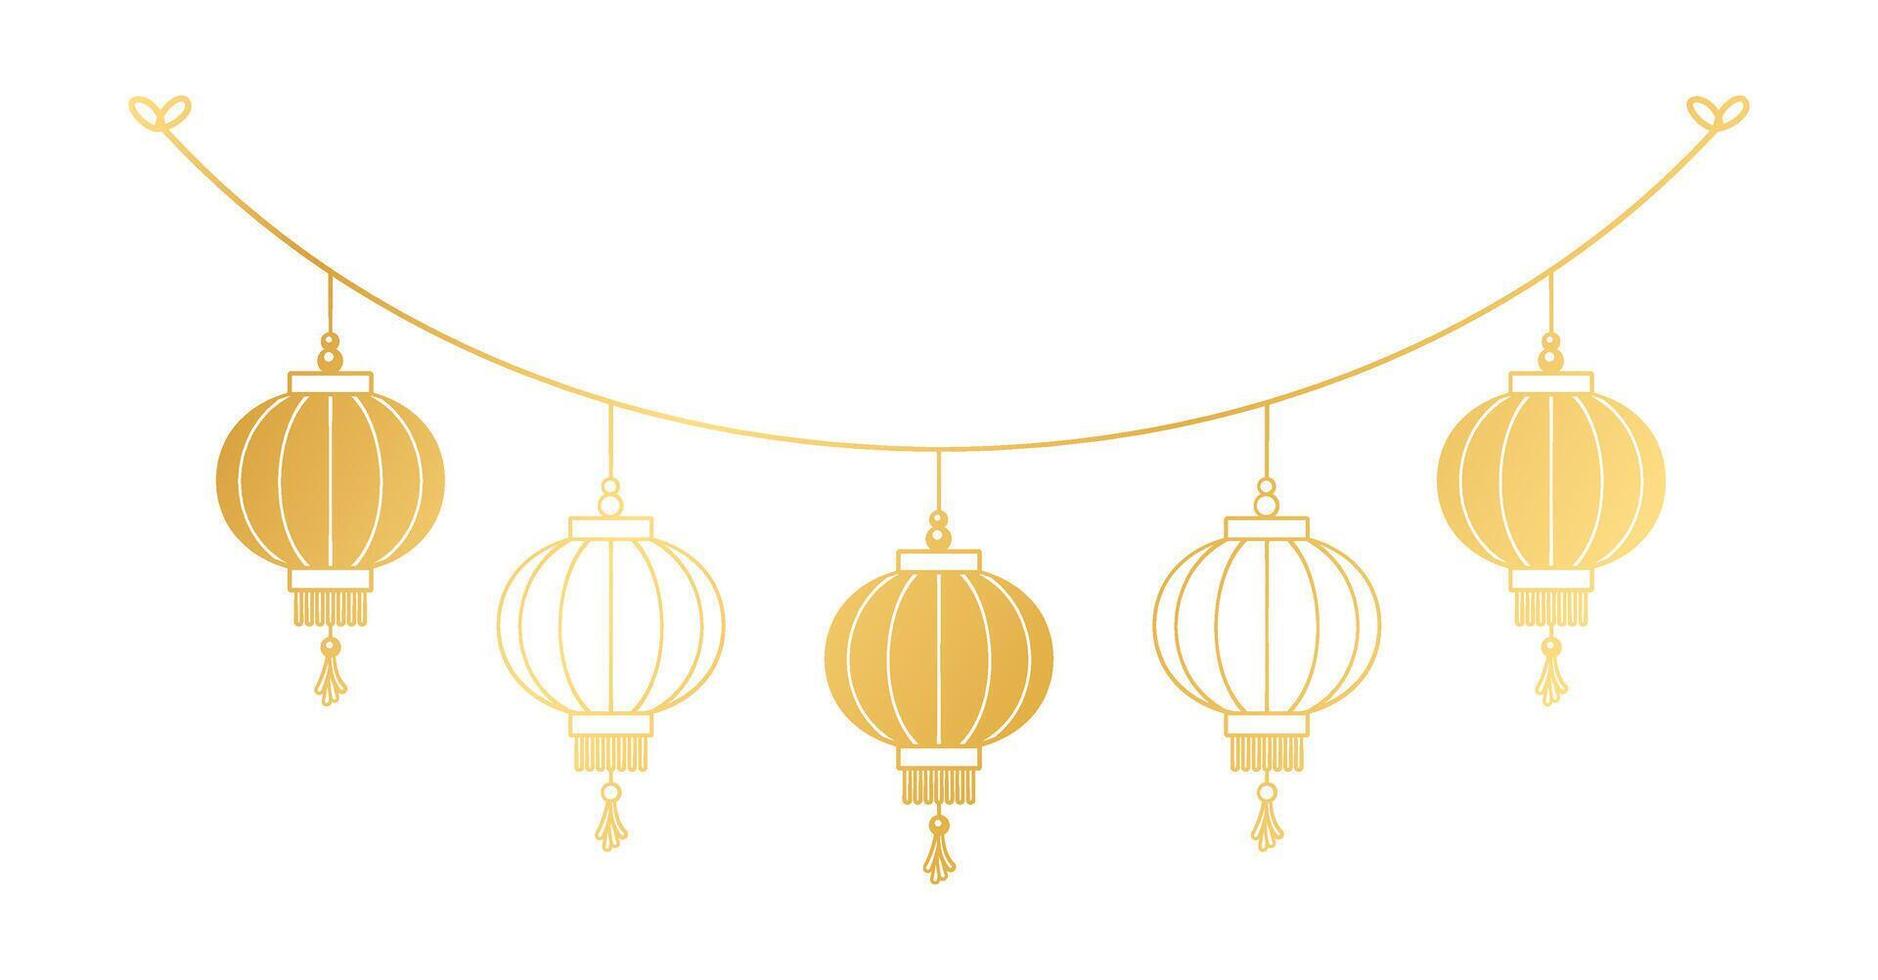 Gold Chinesisch Laterne hängend Girlande Silhouette, Mond- Neu Jahr und mitte Herbst Festival Dekoration Grafik vektor